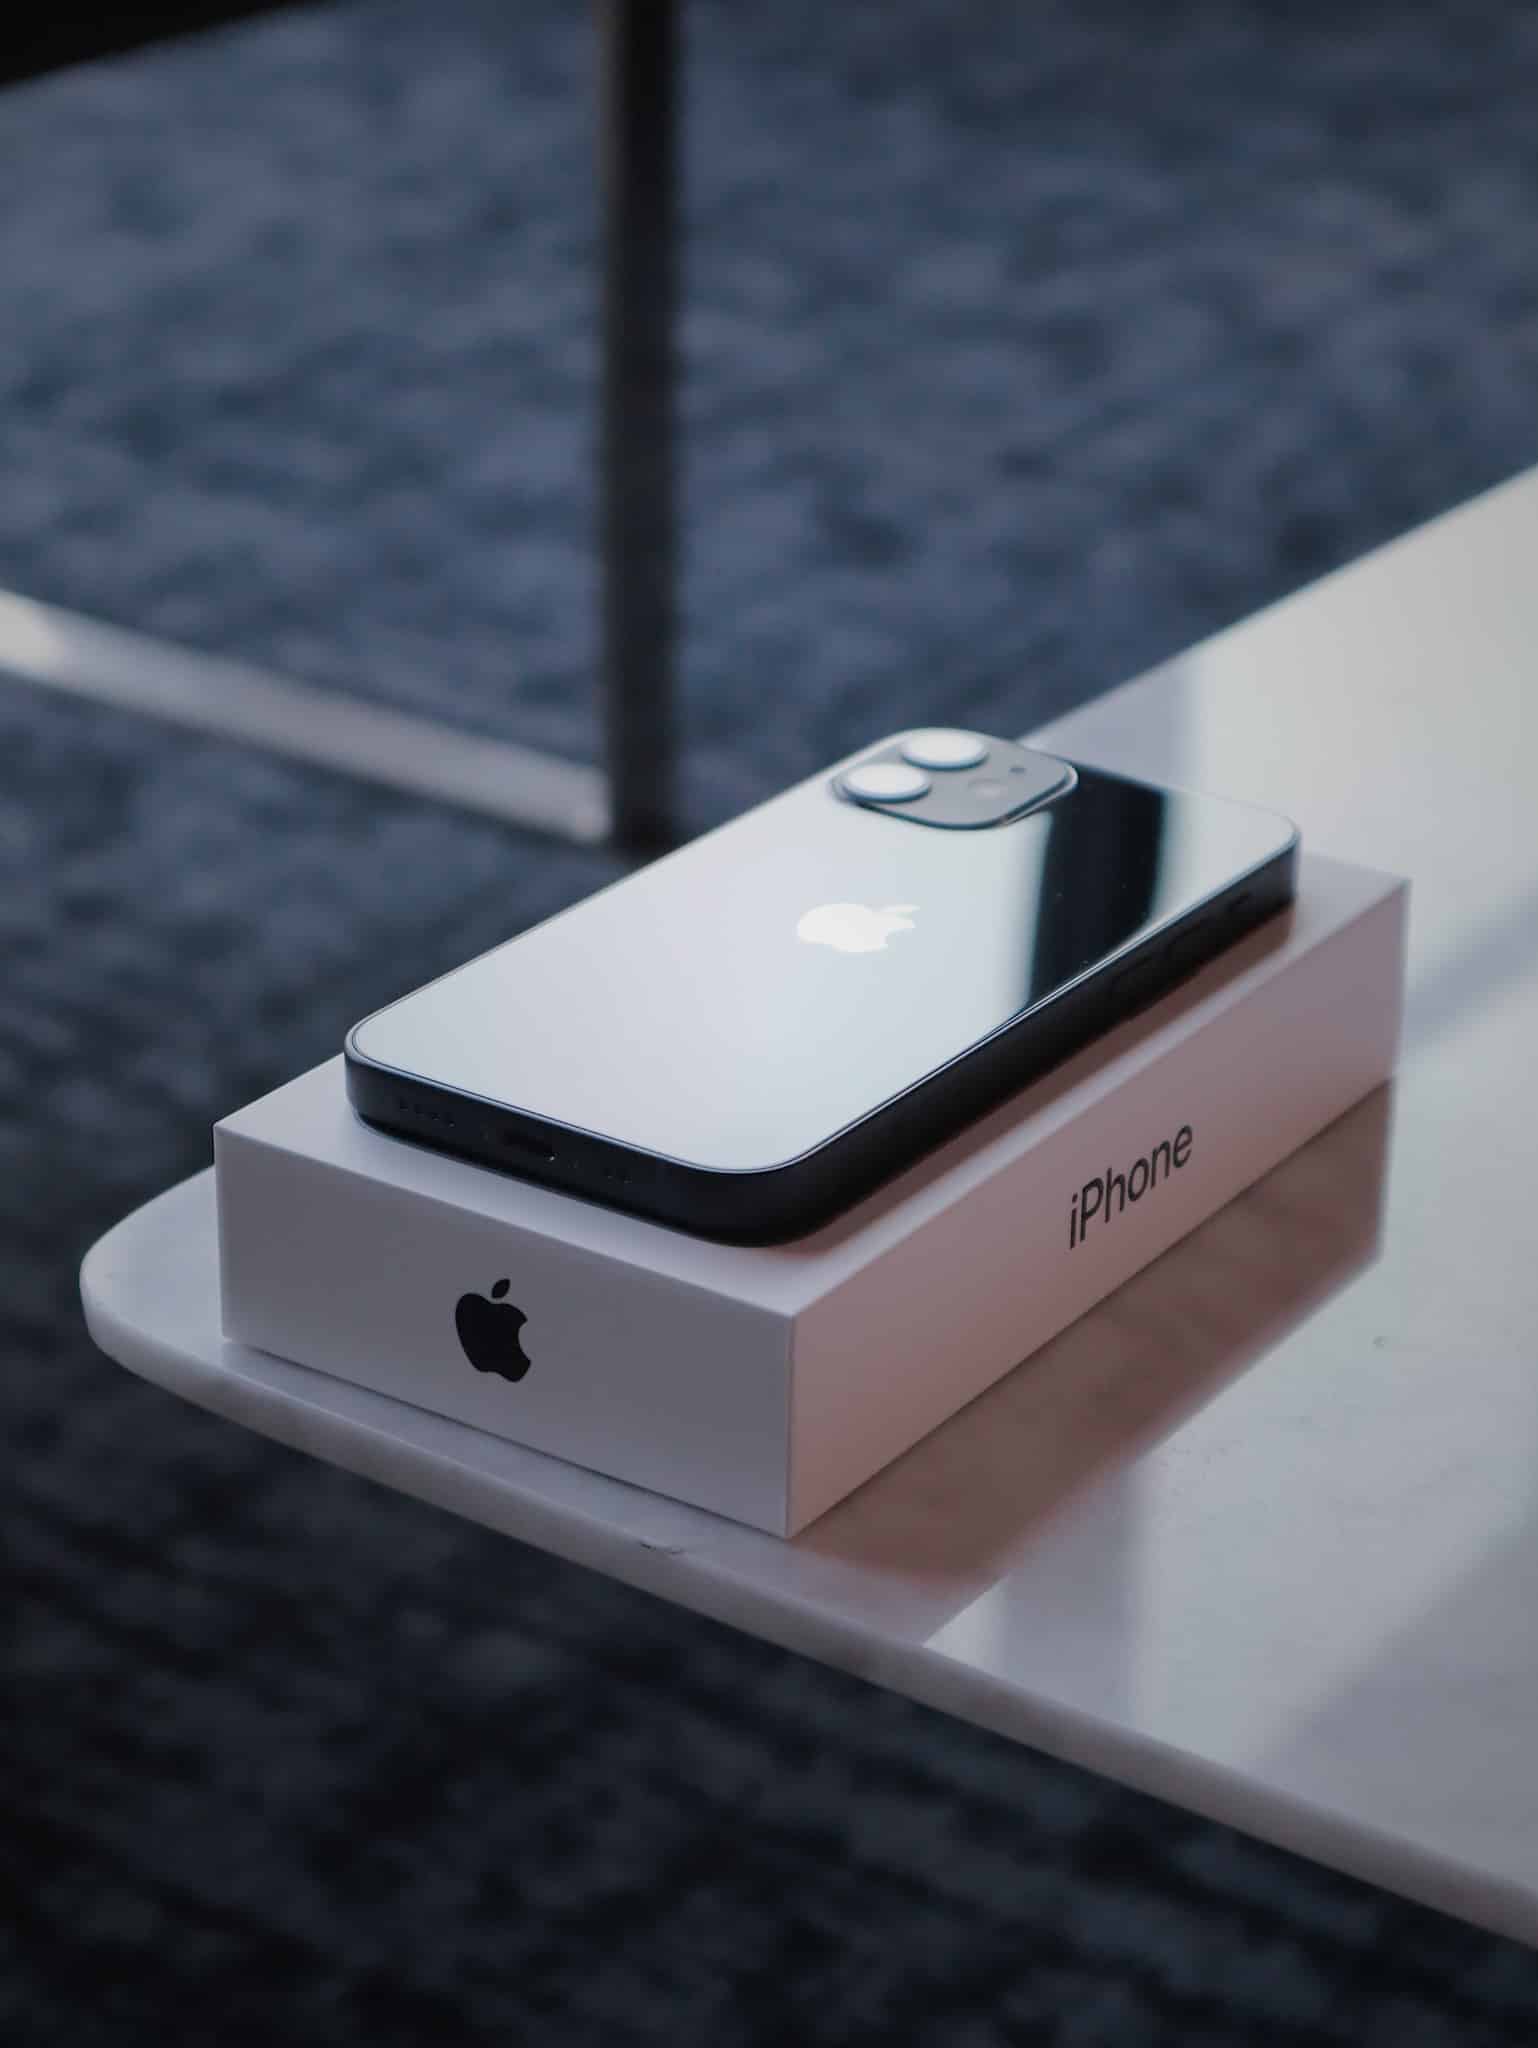 Doanh số thấp hơn kỳ vọng, Apple dừng sản xuất iPhone 12 mini